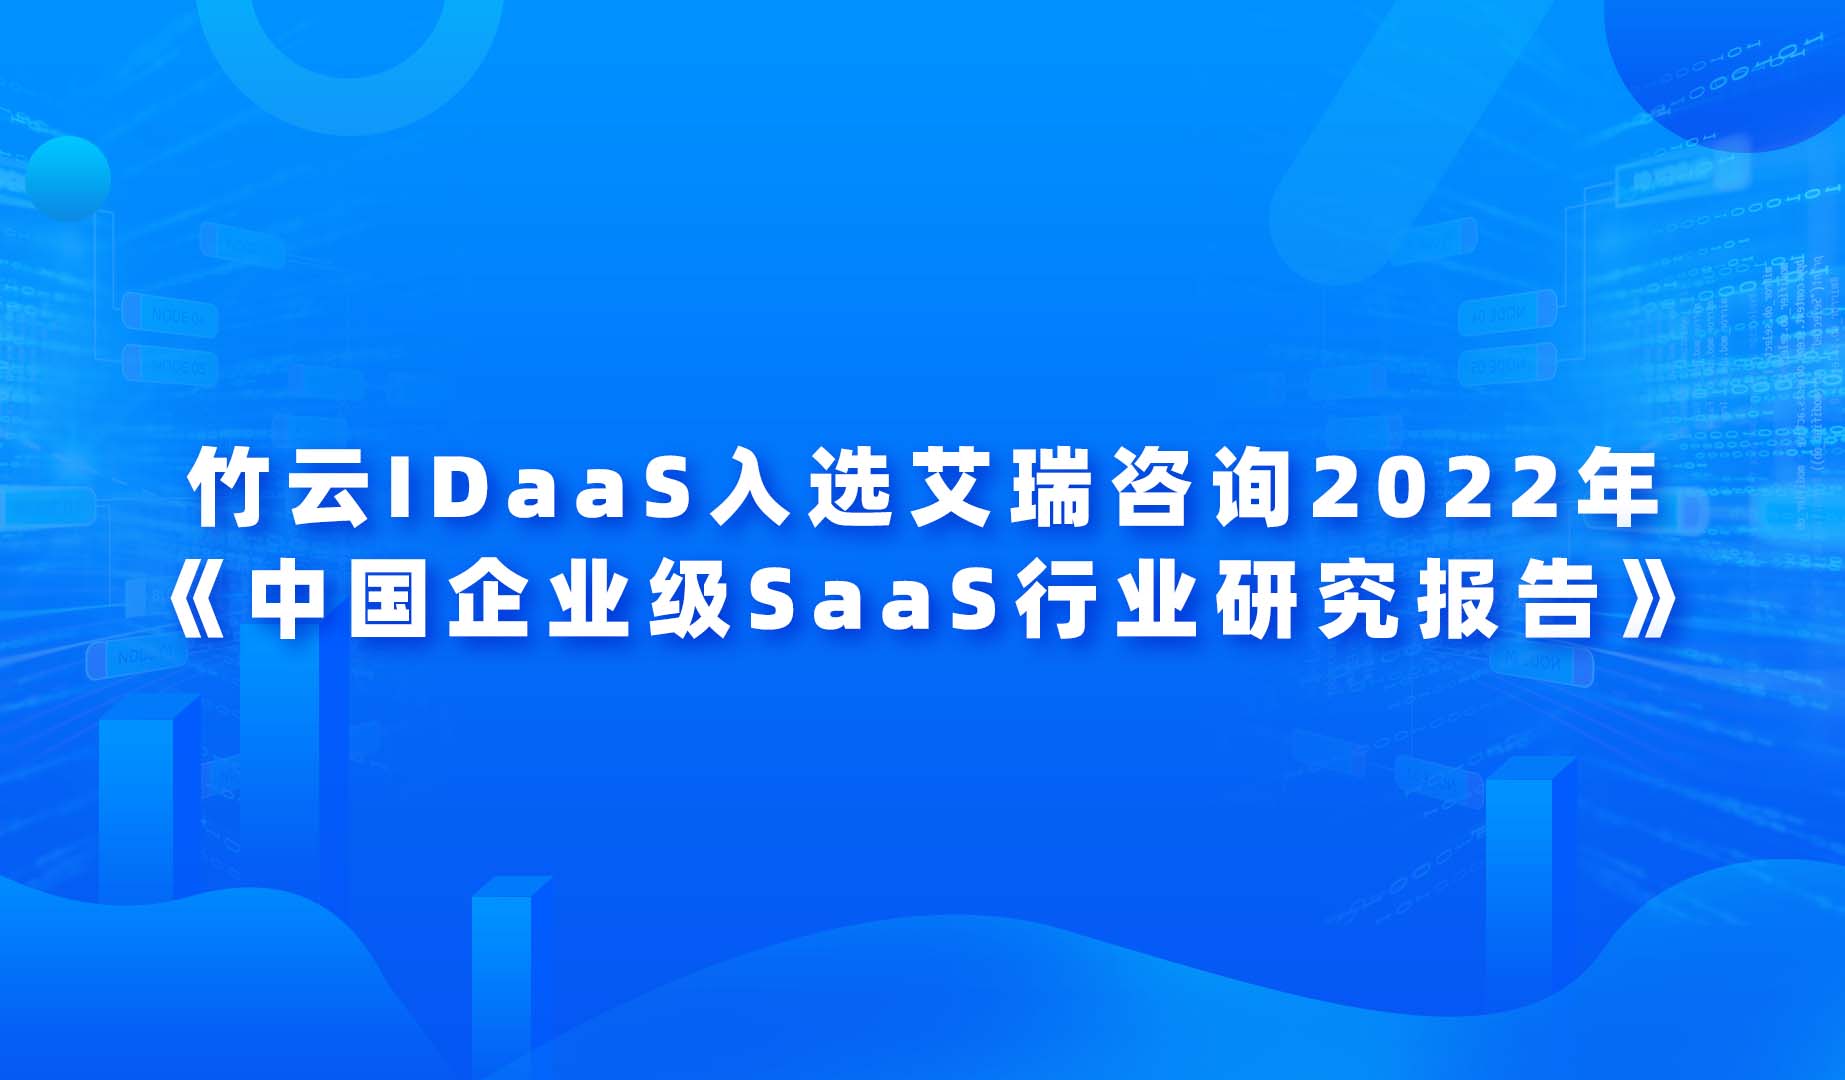 竹云IDaaS入选艾瑞咨询 2022 年《中国企业级 SaaS 行业研究报告》